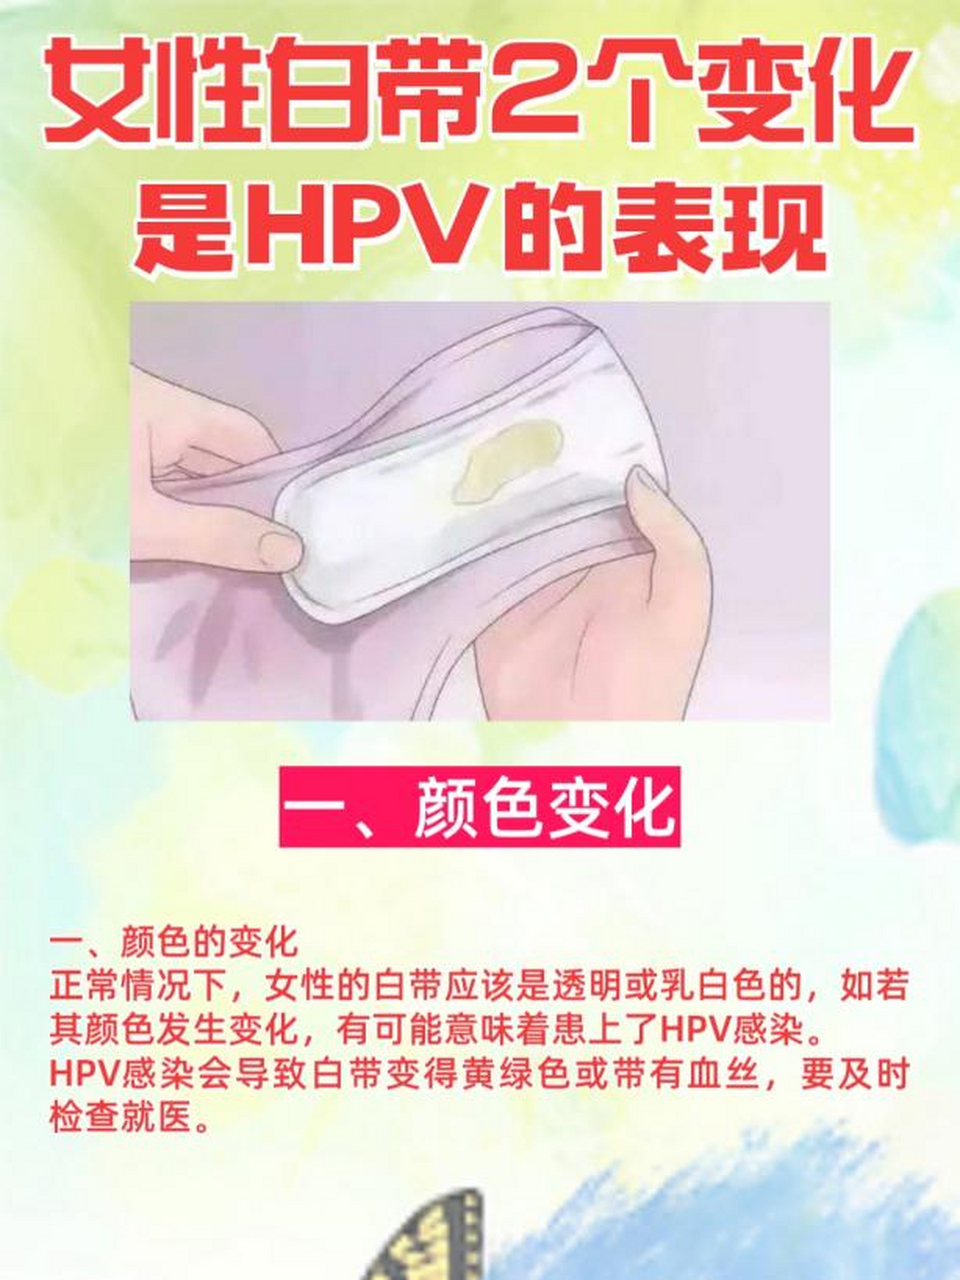 hpv感染白带图片病毒图片